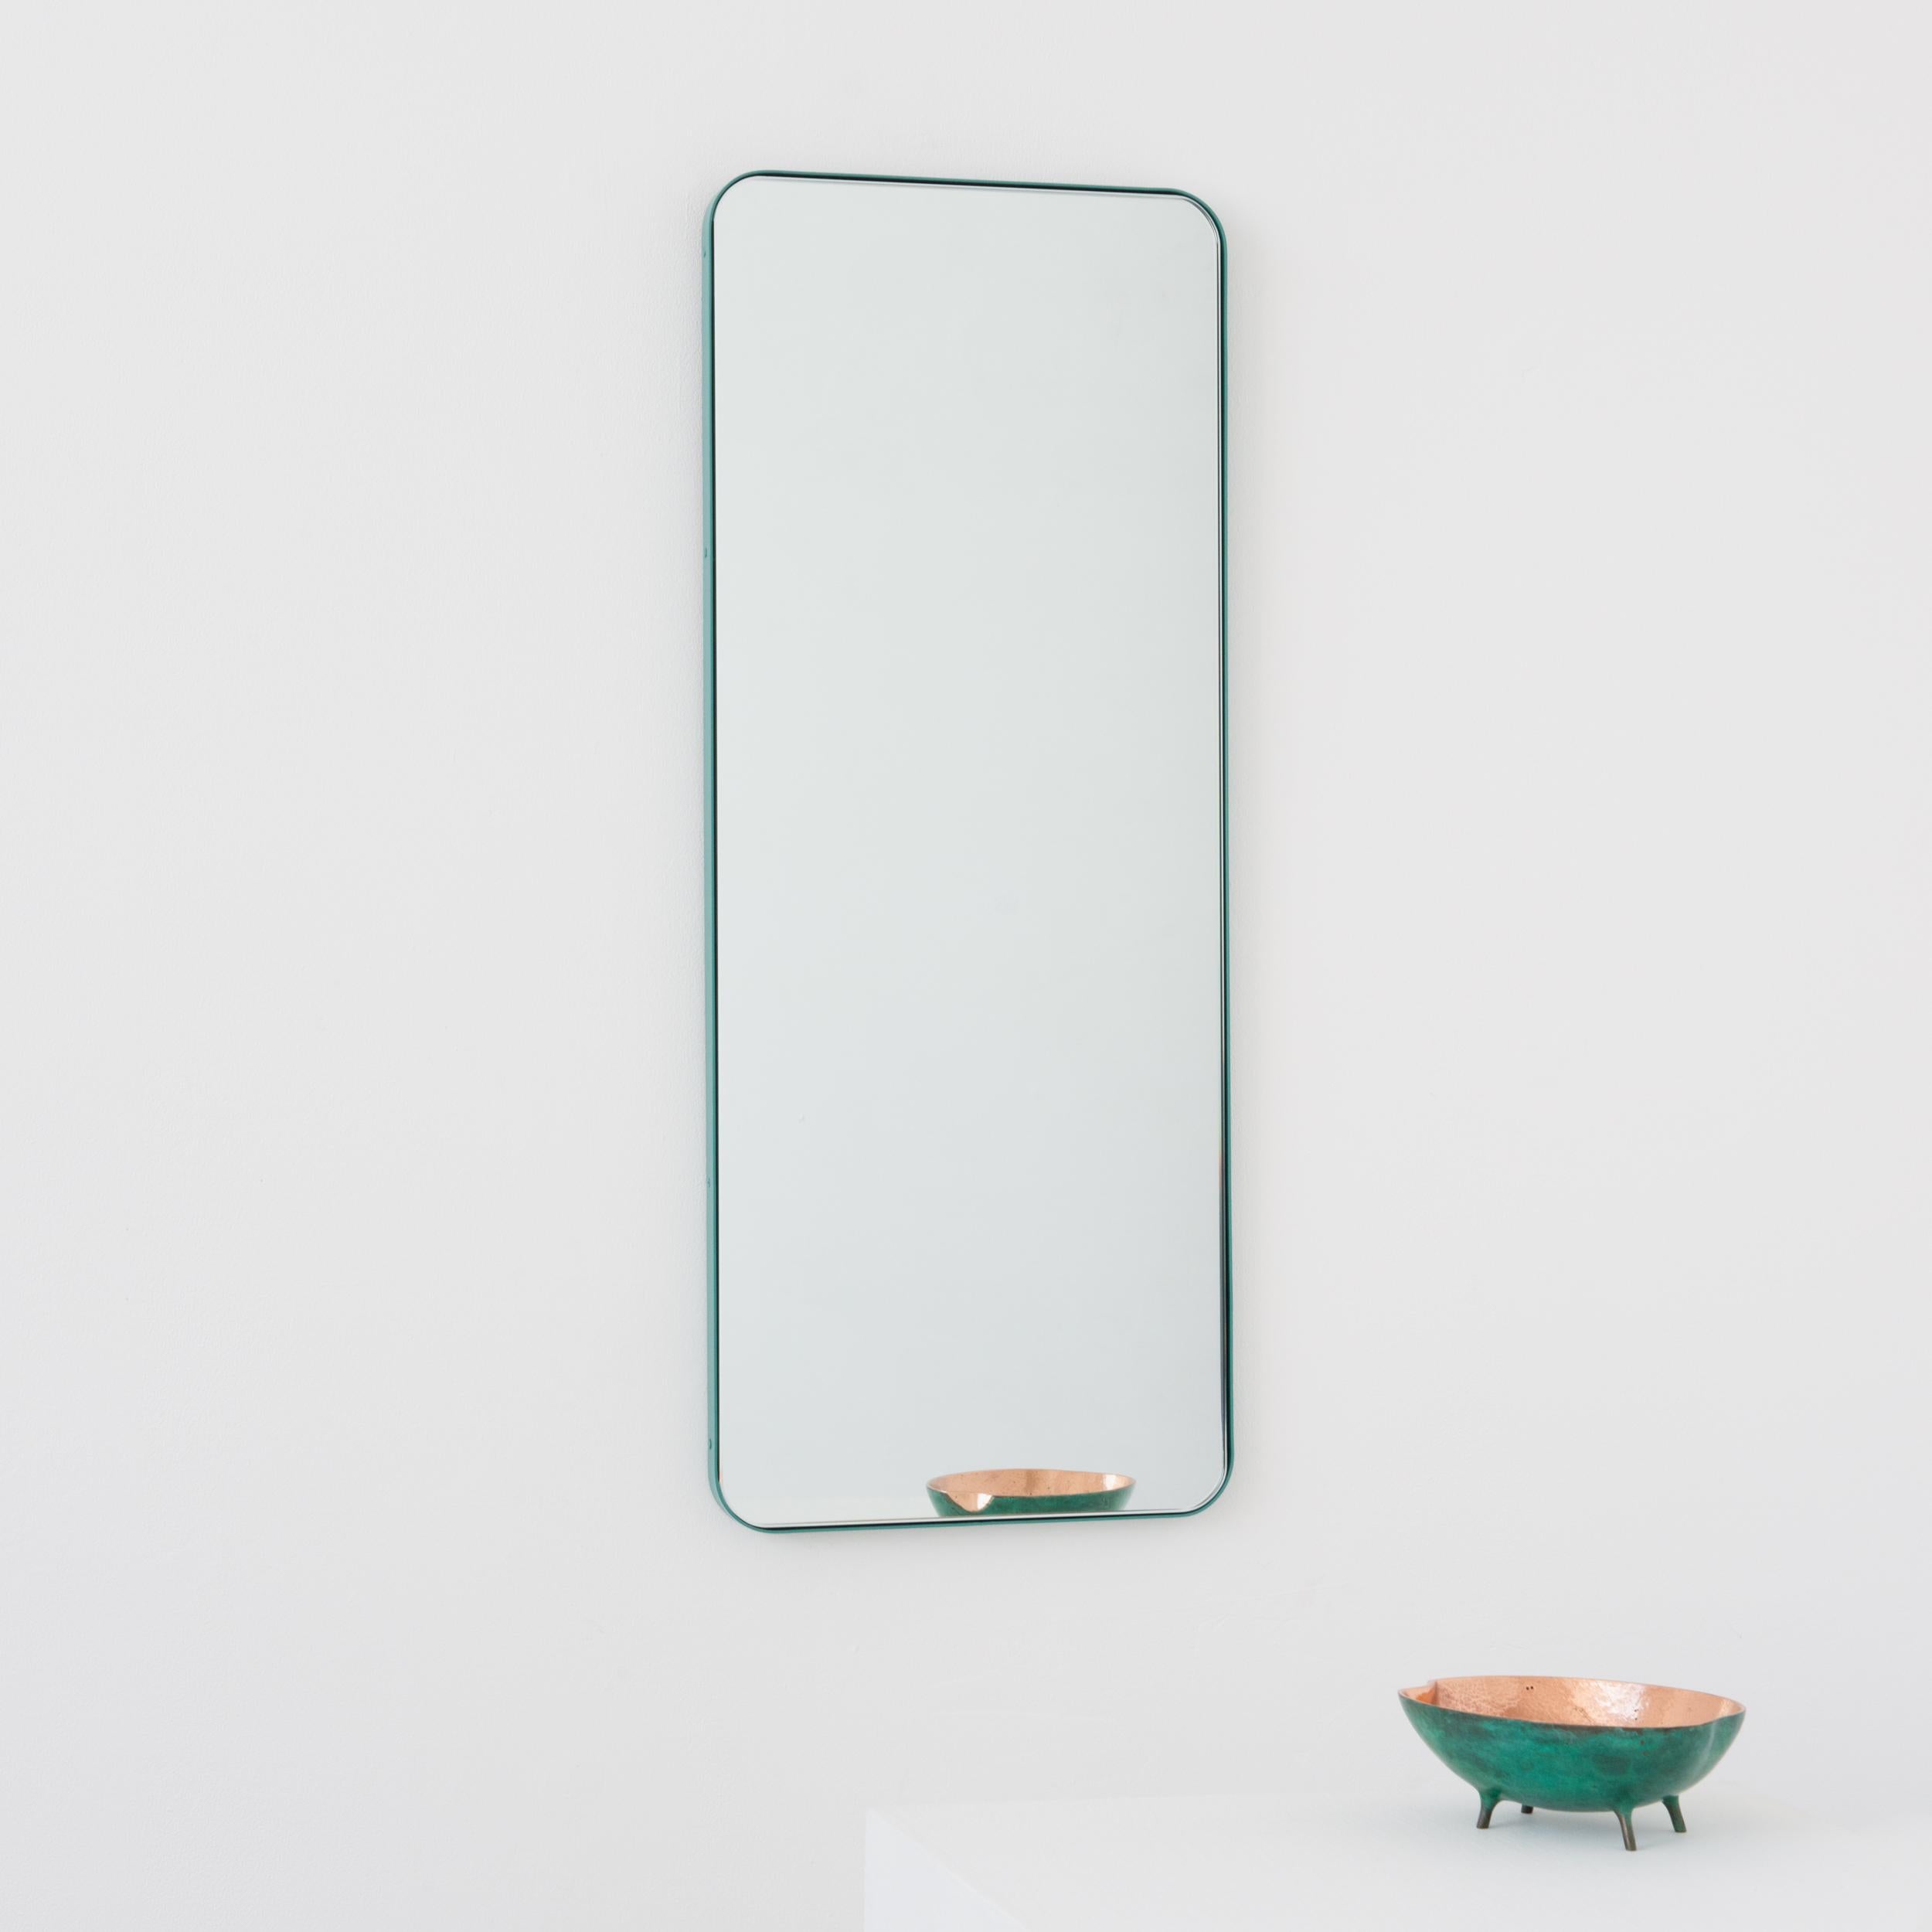 Miroir rectangulaire moderne avec un cadre turquoise menthe revêtu de poudre d'aluminium. Une partie de la charmante collection Quadris™, conçue et fabriquée à la main à Londres, au Royaume-Uni. 

Fourni avec une barre en z spécialisée pour une